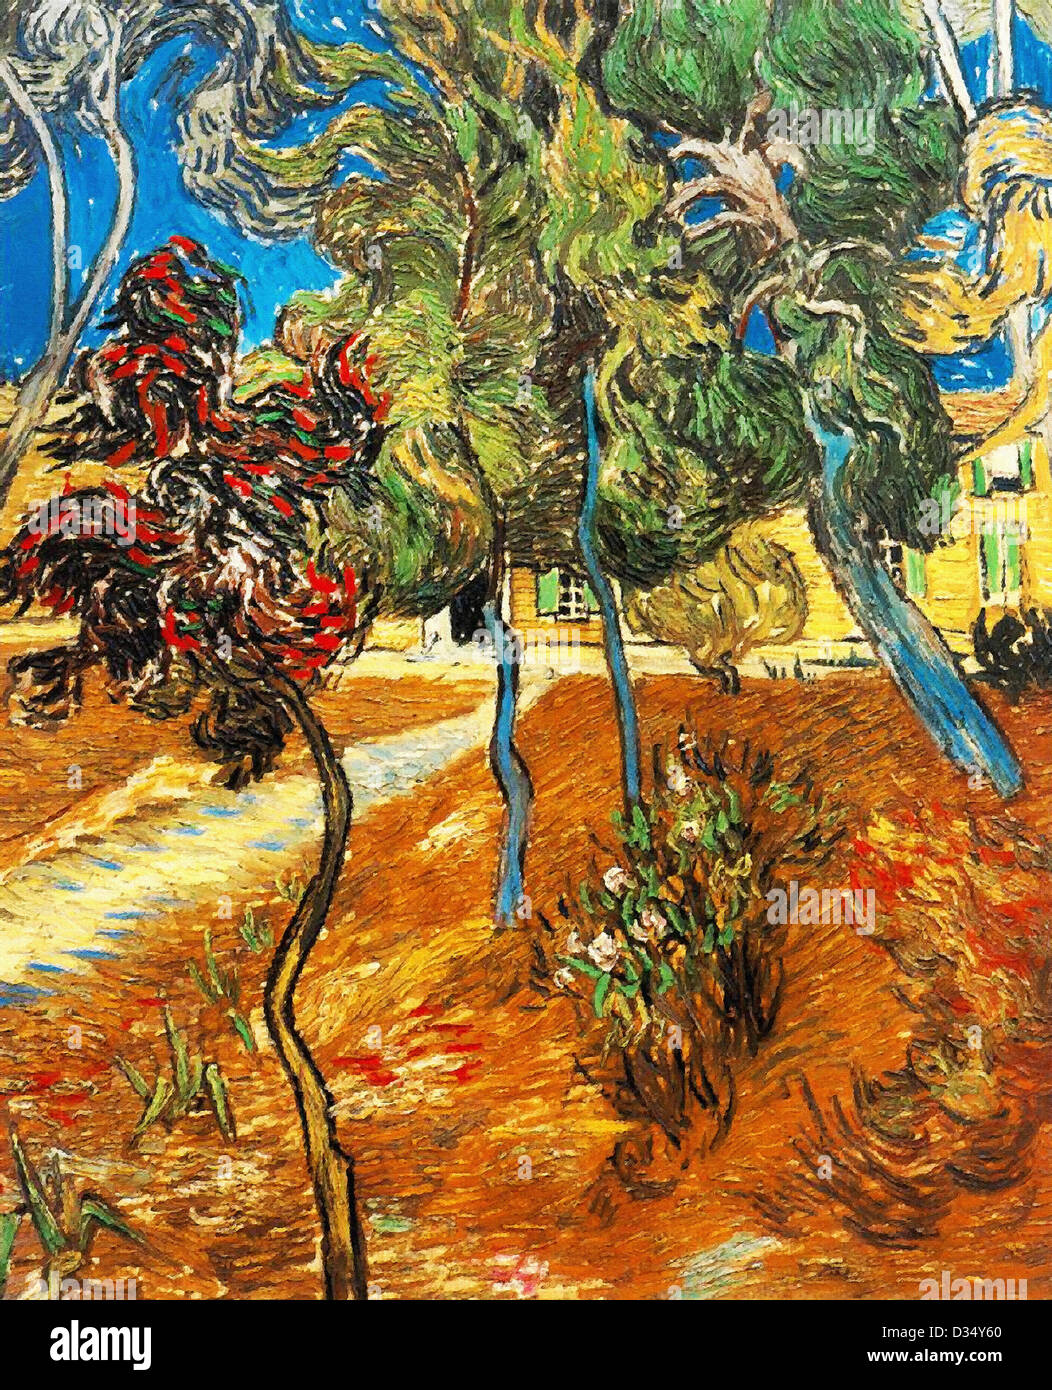 Vincent van Gogh, les arbres dans le jardin de l'asile. 1889. Le postimpressionnisme. Huile sur toile. Lieu de création : Saint-remy-blanzy Banque D'Images